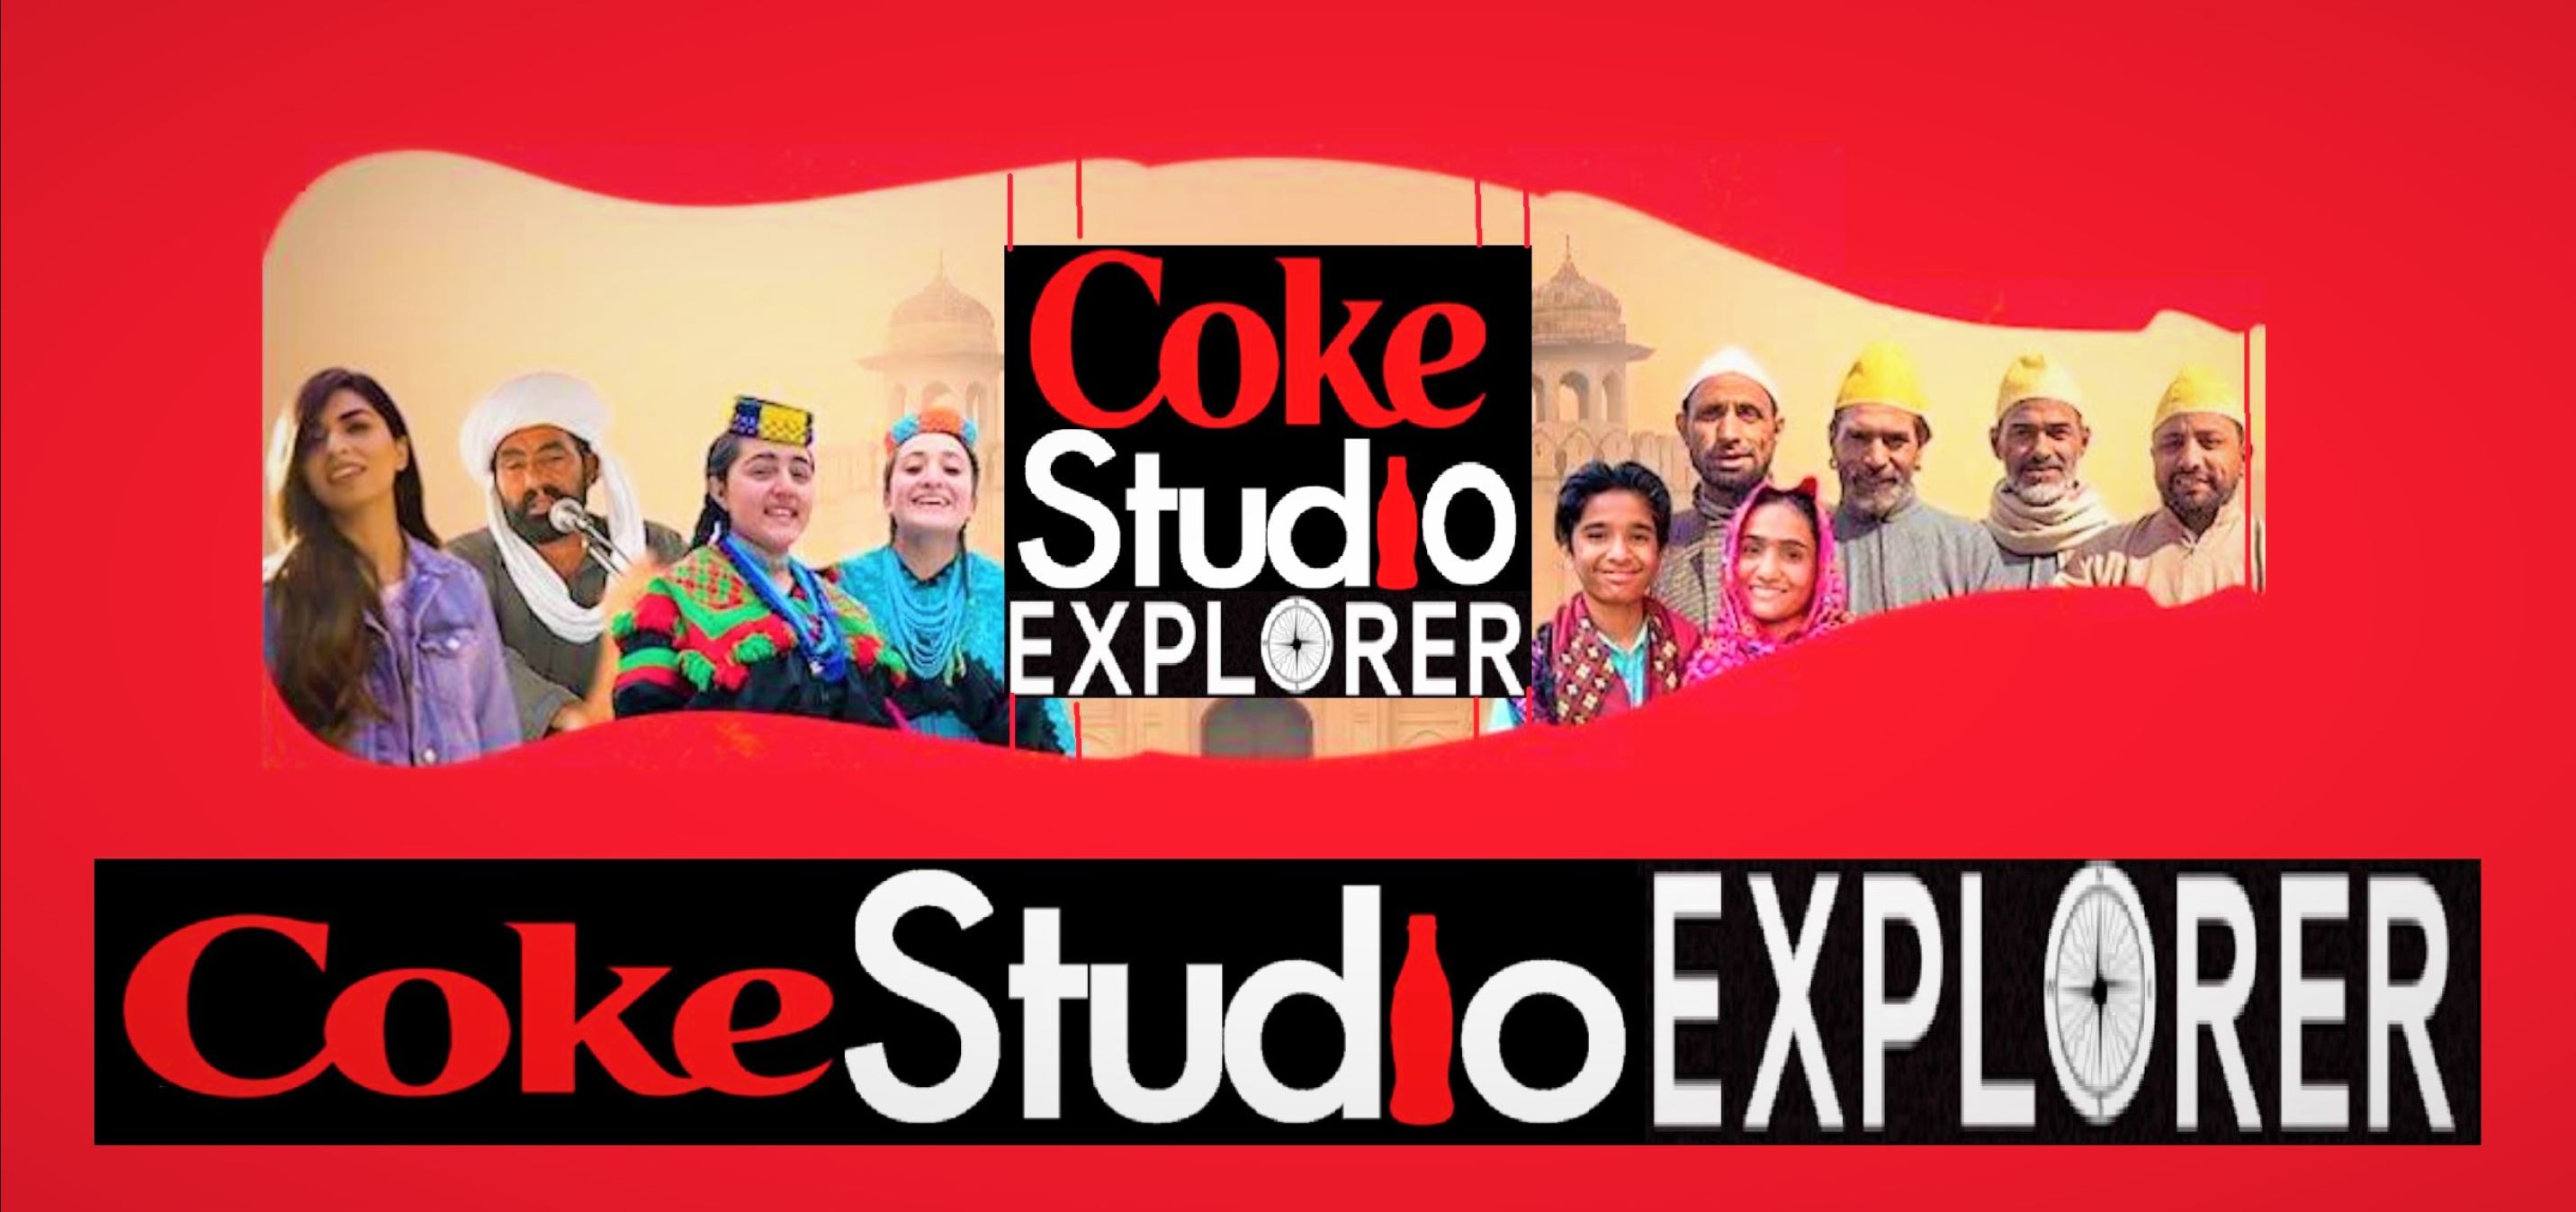 coke studio explorer